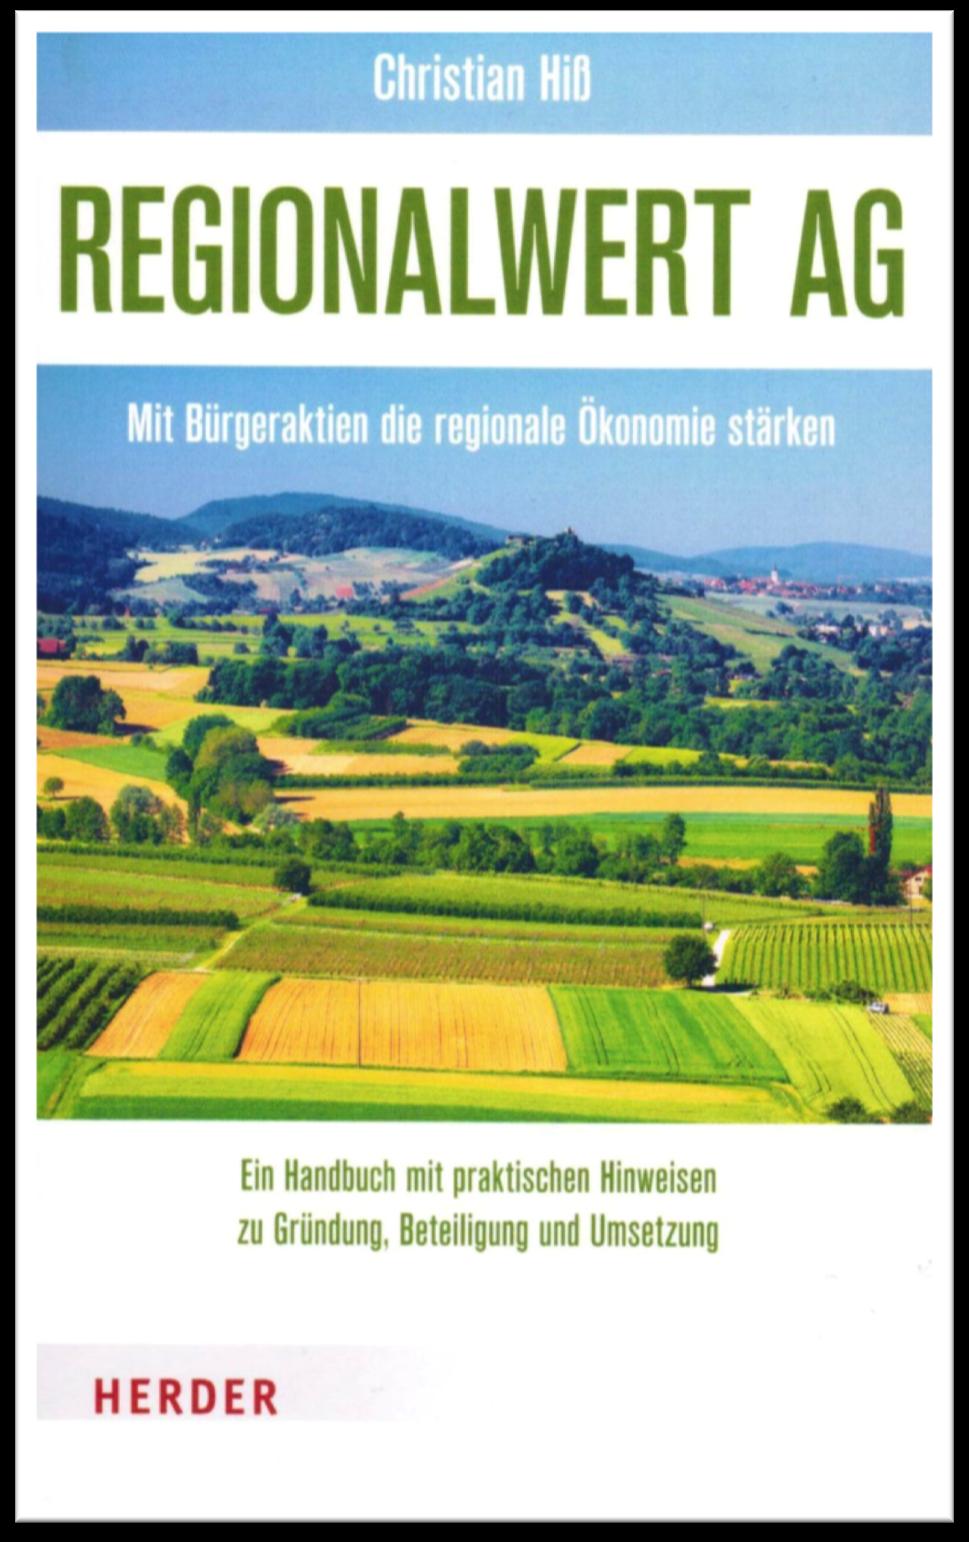 Regionalwert AG Mit Bürgerak,en die regionale Ökonomie stärken Herder Verlag Autor: Chris^an Hiß Weitere Gastbeiträge Auﬂ./Jahr: 1.